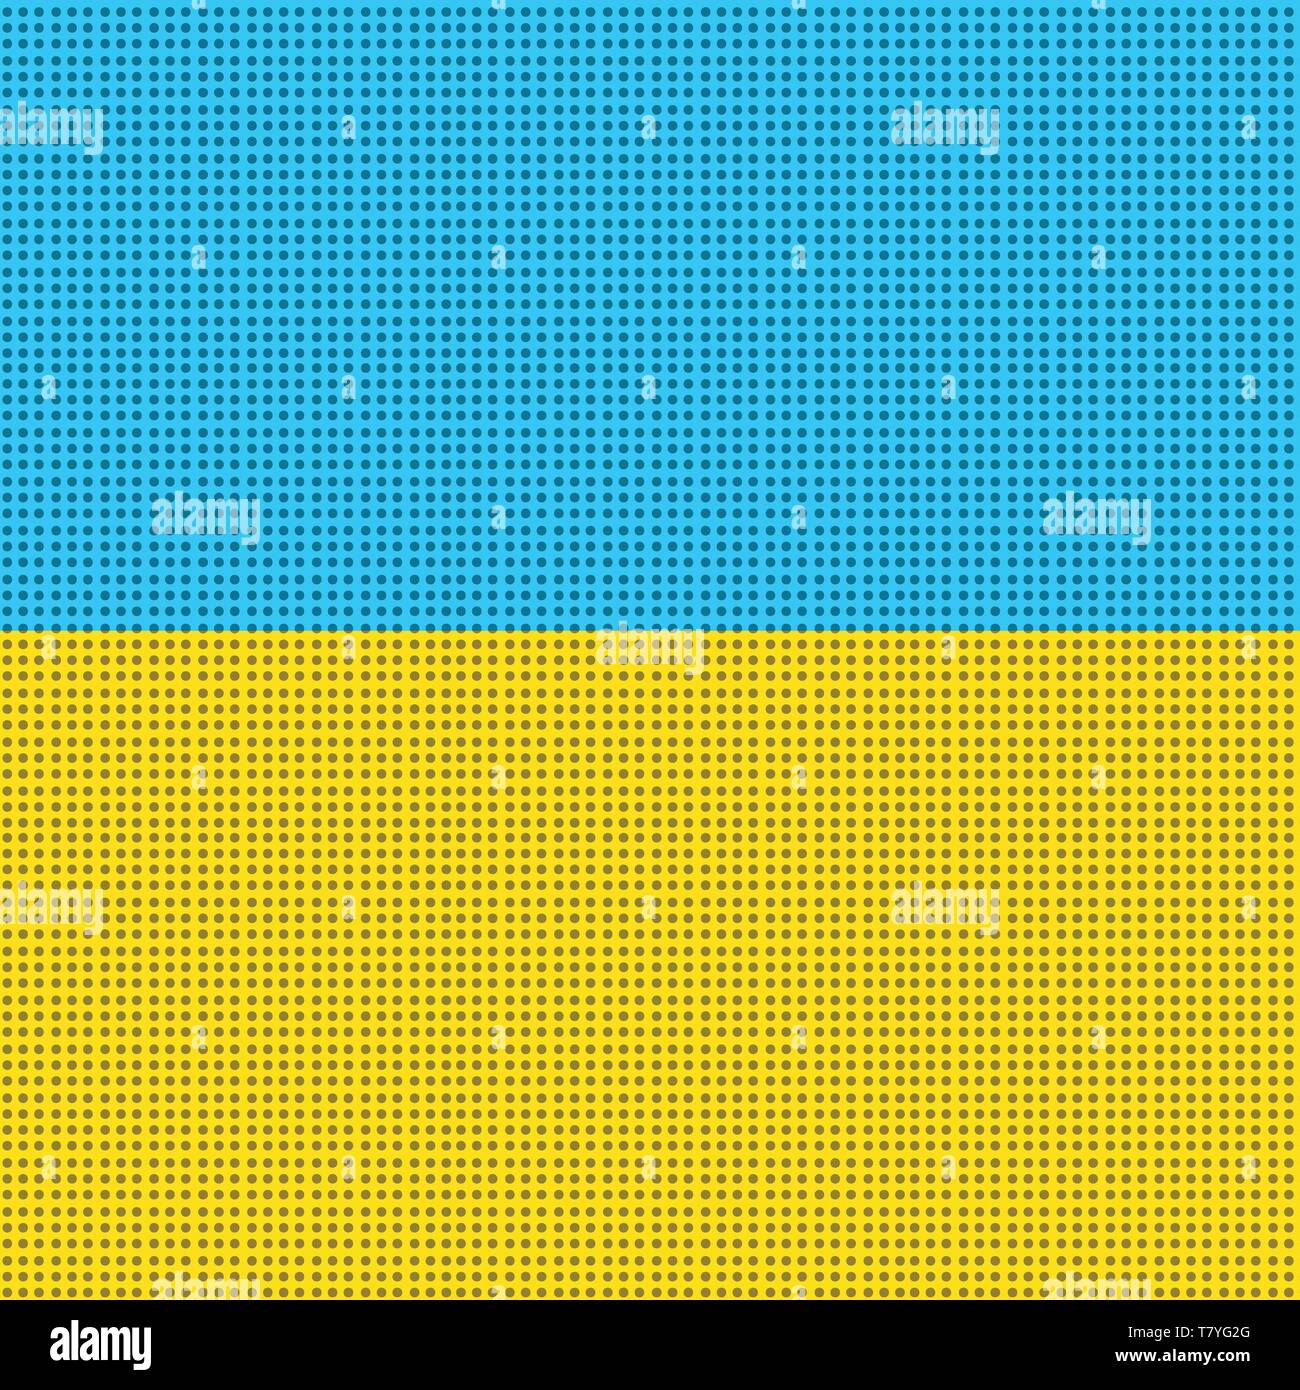 Gelb Blau Flagge der Ukraine. Comic cartoon Pop Art retro Vektor Grafik Handzeichnung Stock Vektor